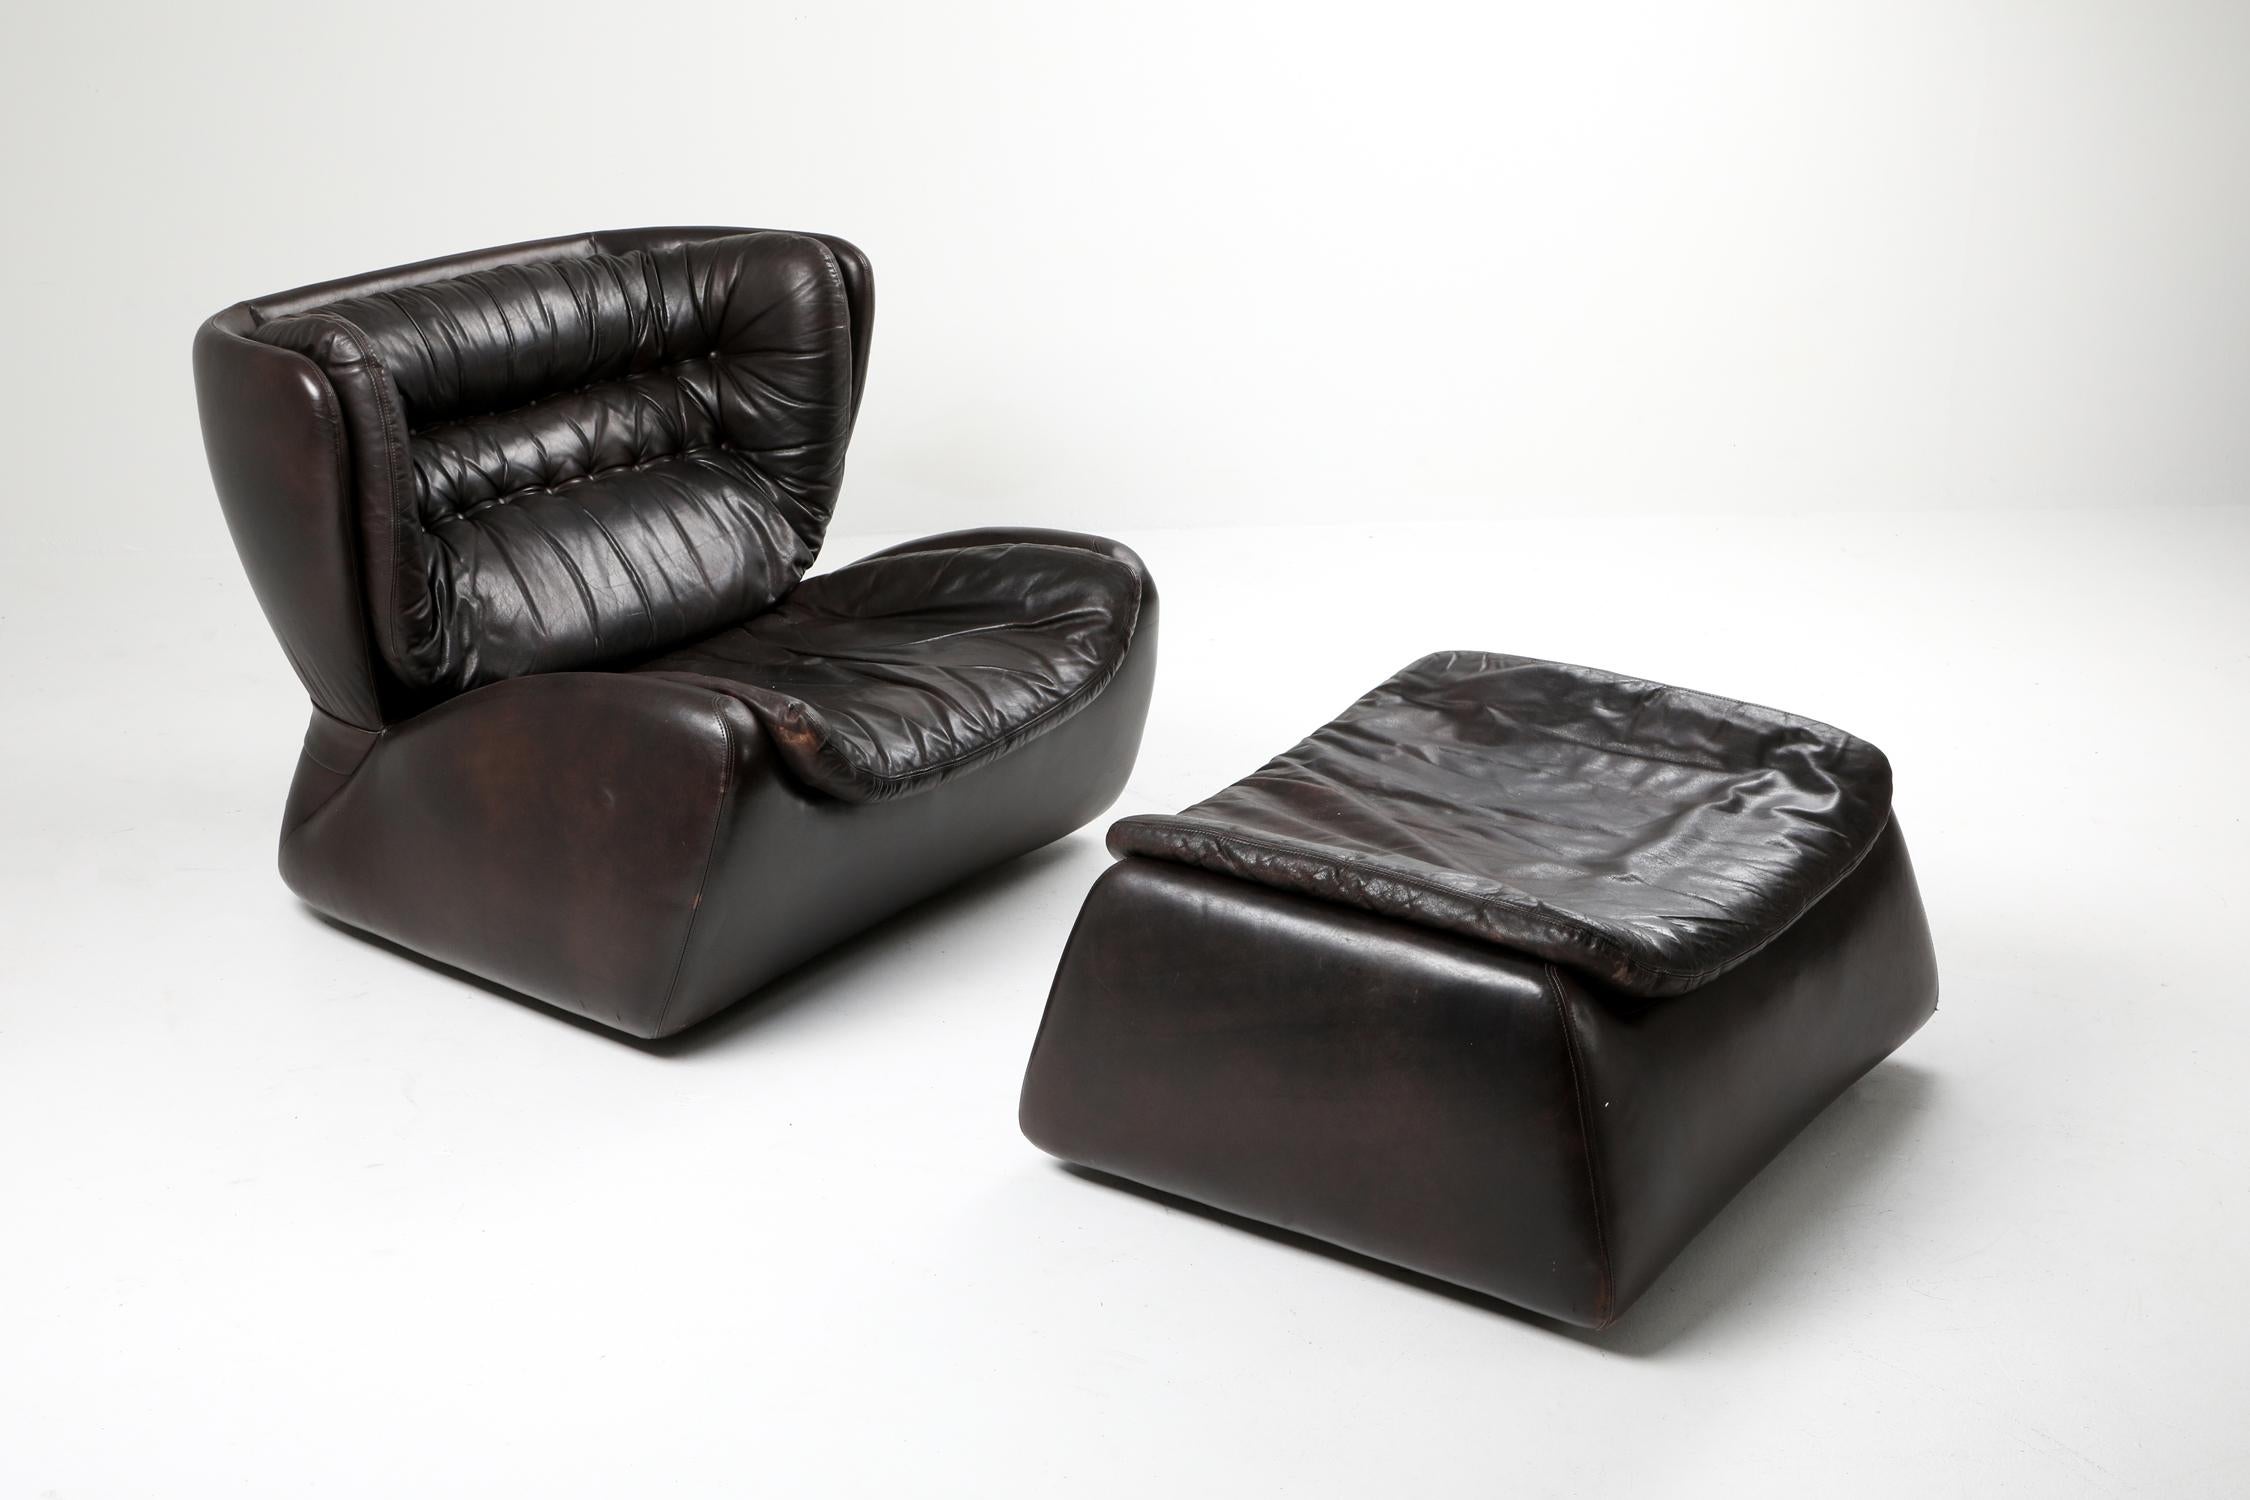 Chaise longue et ottomane Heinz Waldmann & Anita Schmidt pour Durlet en 1970, cuir brun chocolat foncé, 

Durlet est une marque belge de meubles en cuir de luxe, un peu comme De Sede en Suisse.

Dans les années 1970, ils disposaient d'un large